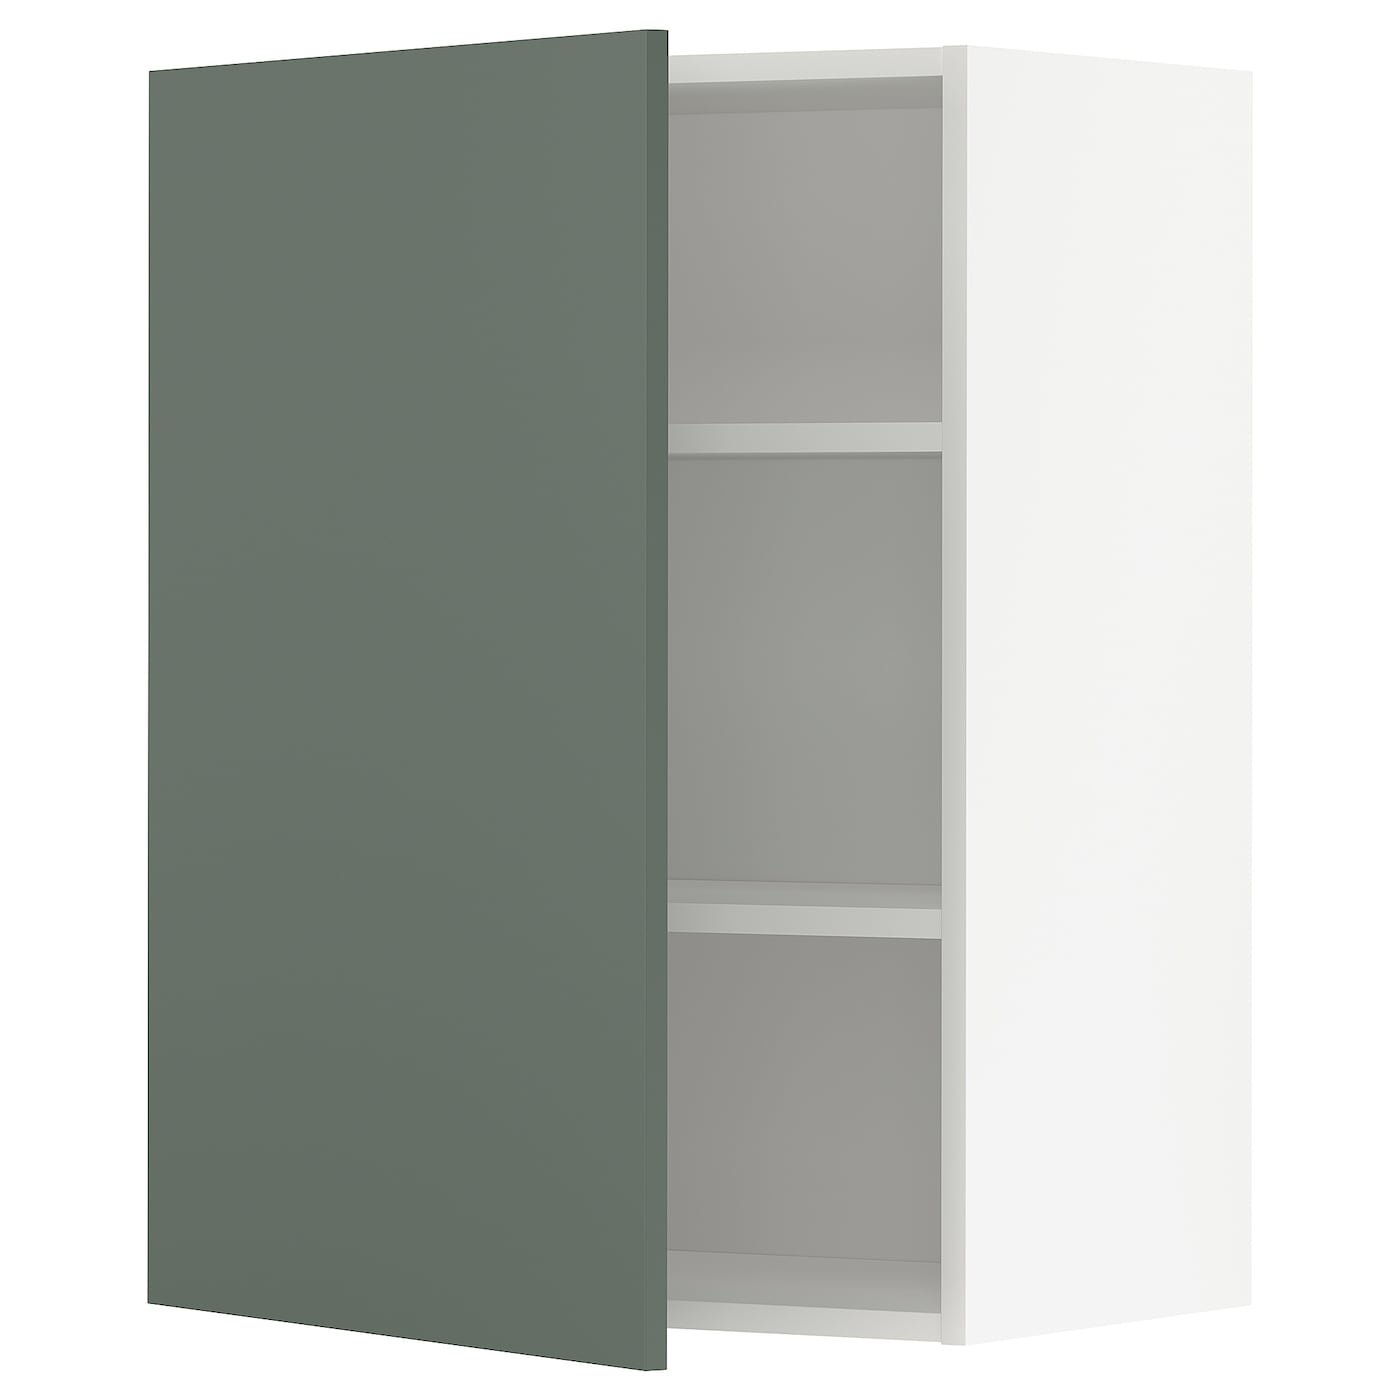 Навесной шкаф с полкой - METOD IKEA/ МЕТОД ИКЕА, 80х60 см, белый/темно-зленый